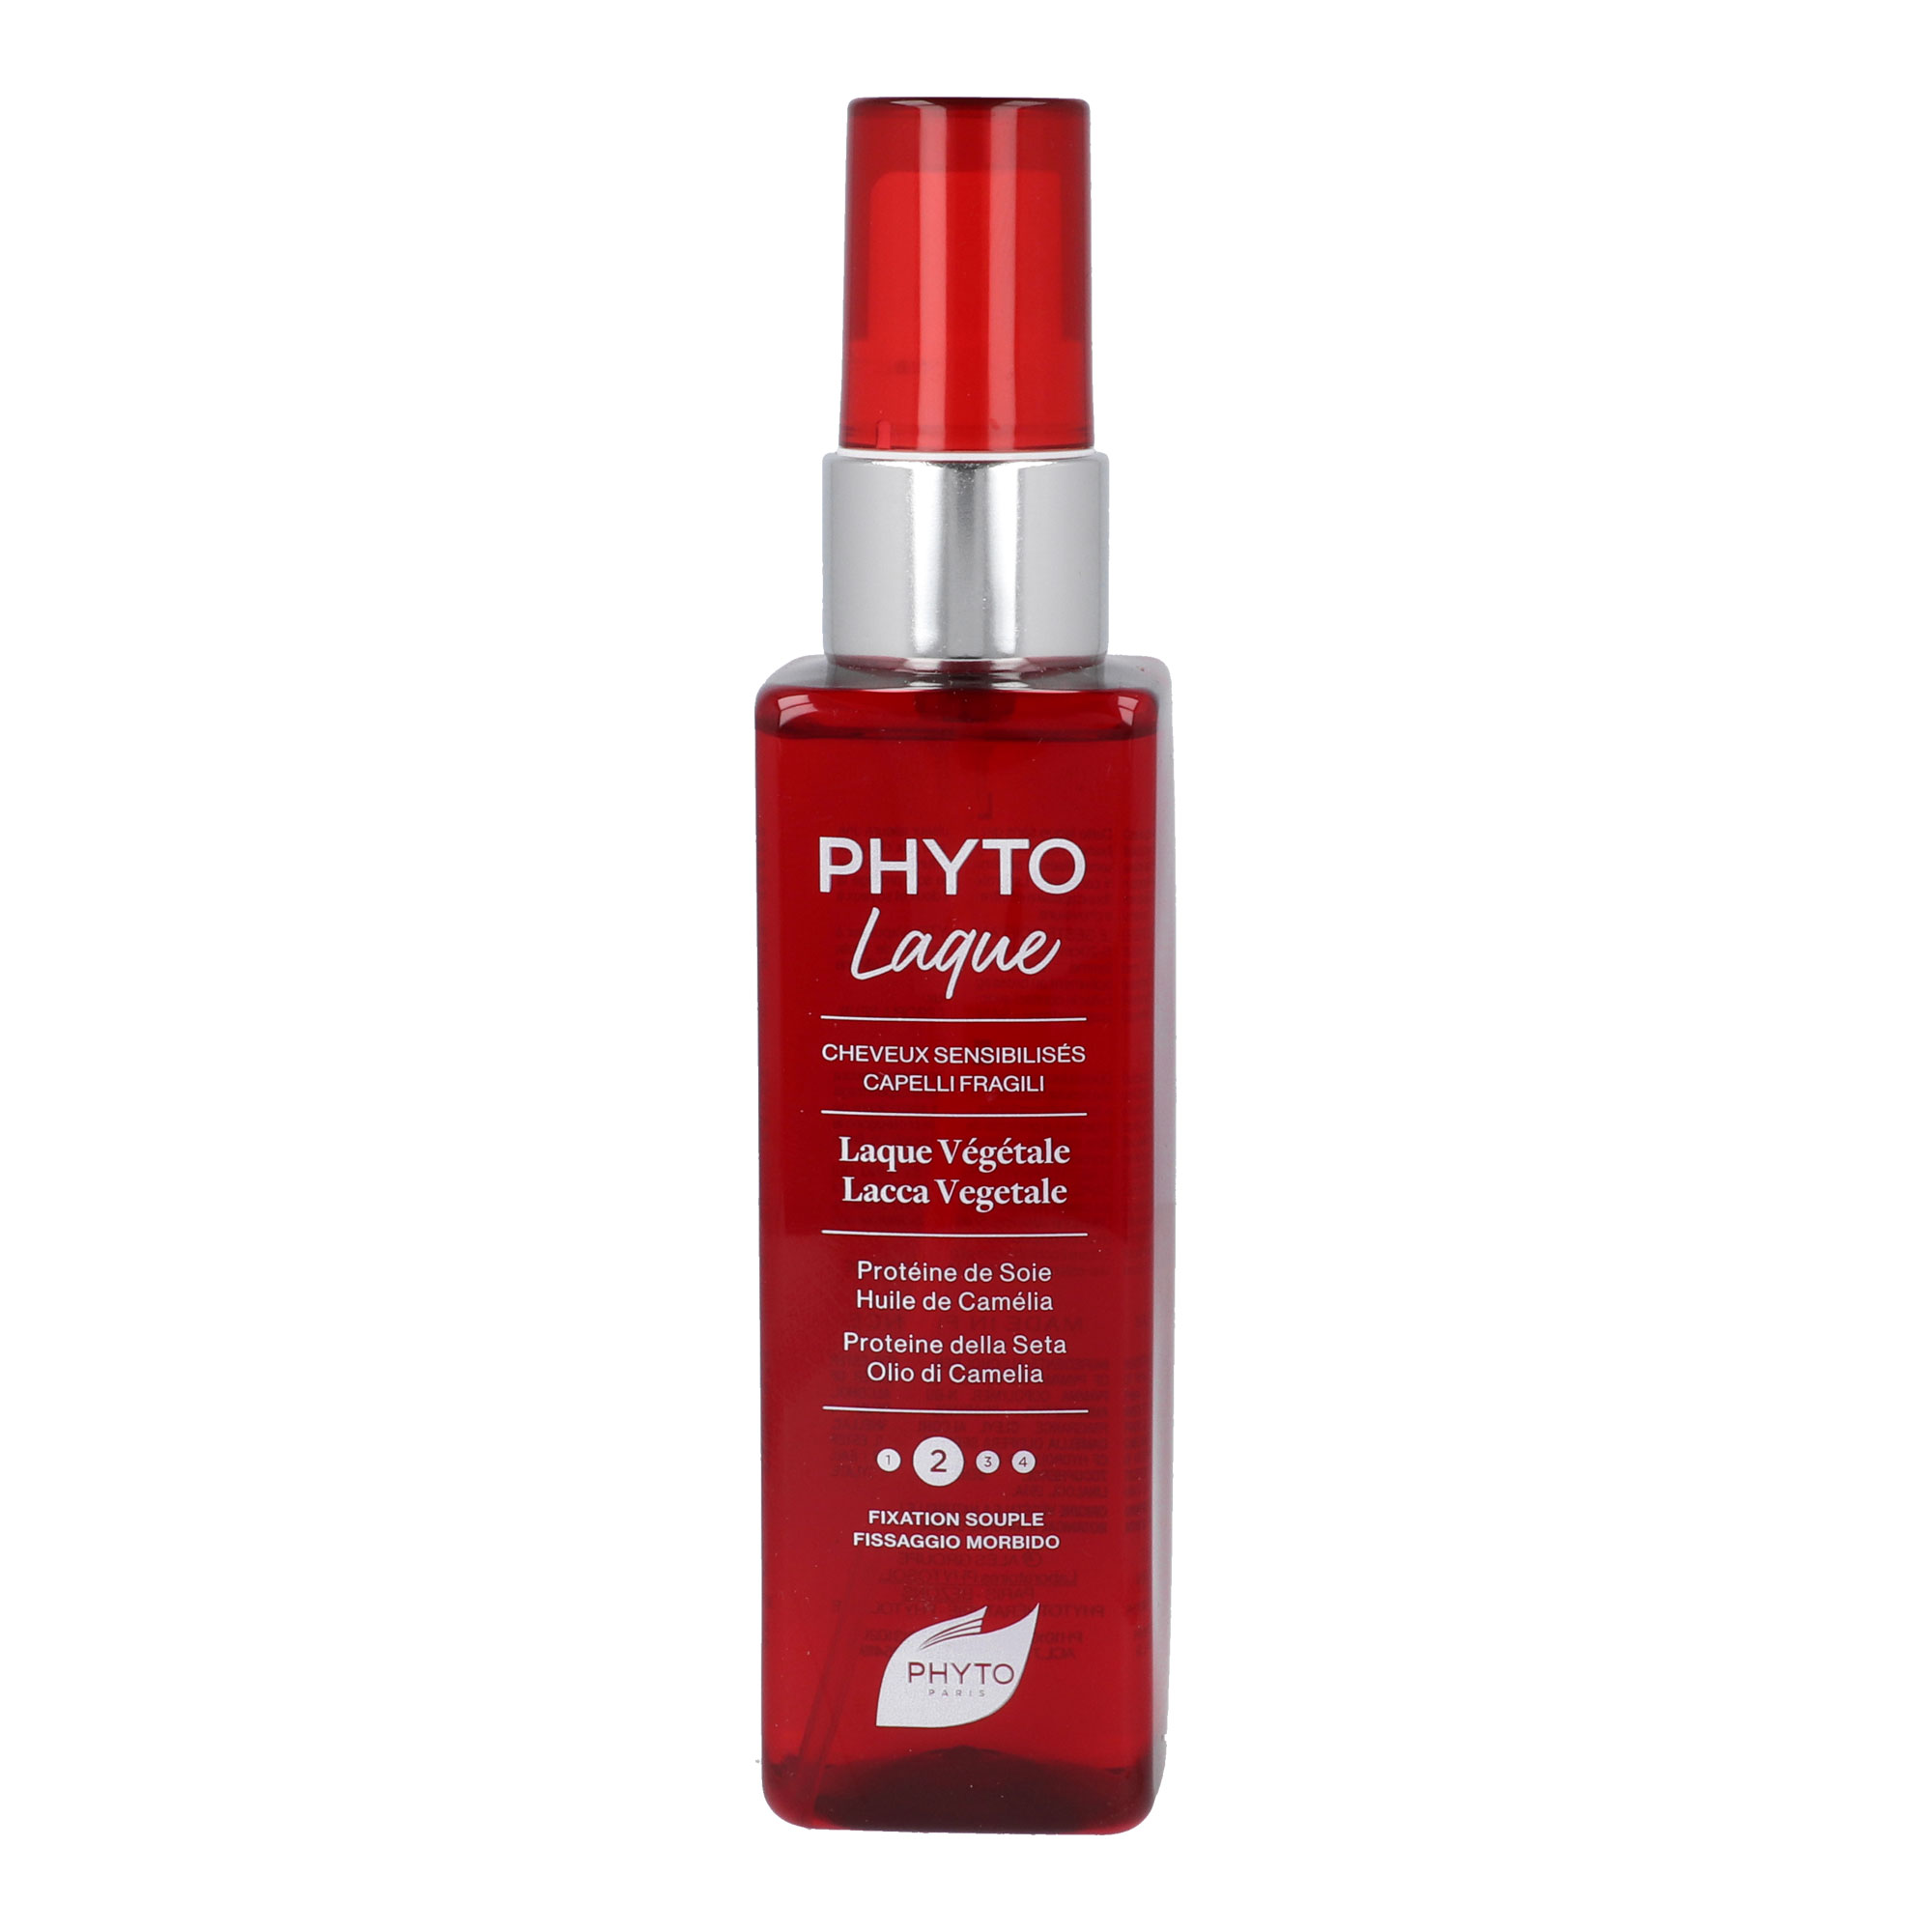 Pflanzliches Haarspray für empfindliches Haar. Mit Seidenfaserproteinen und Kamelienöl. Für natürlichen Halt und leichte Kämmbarkeit.